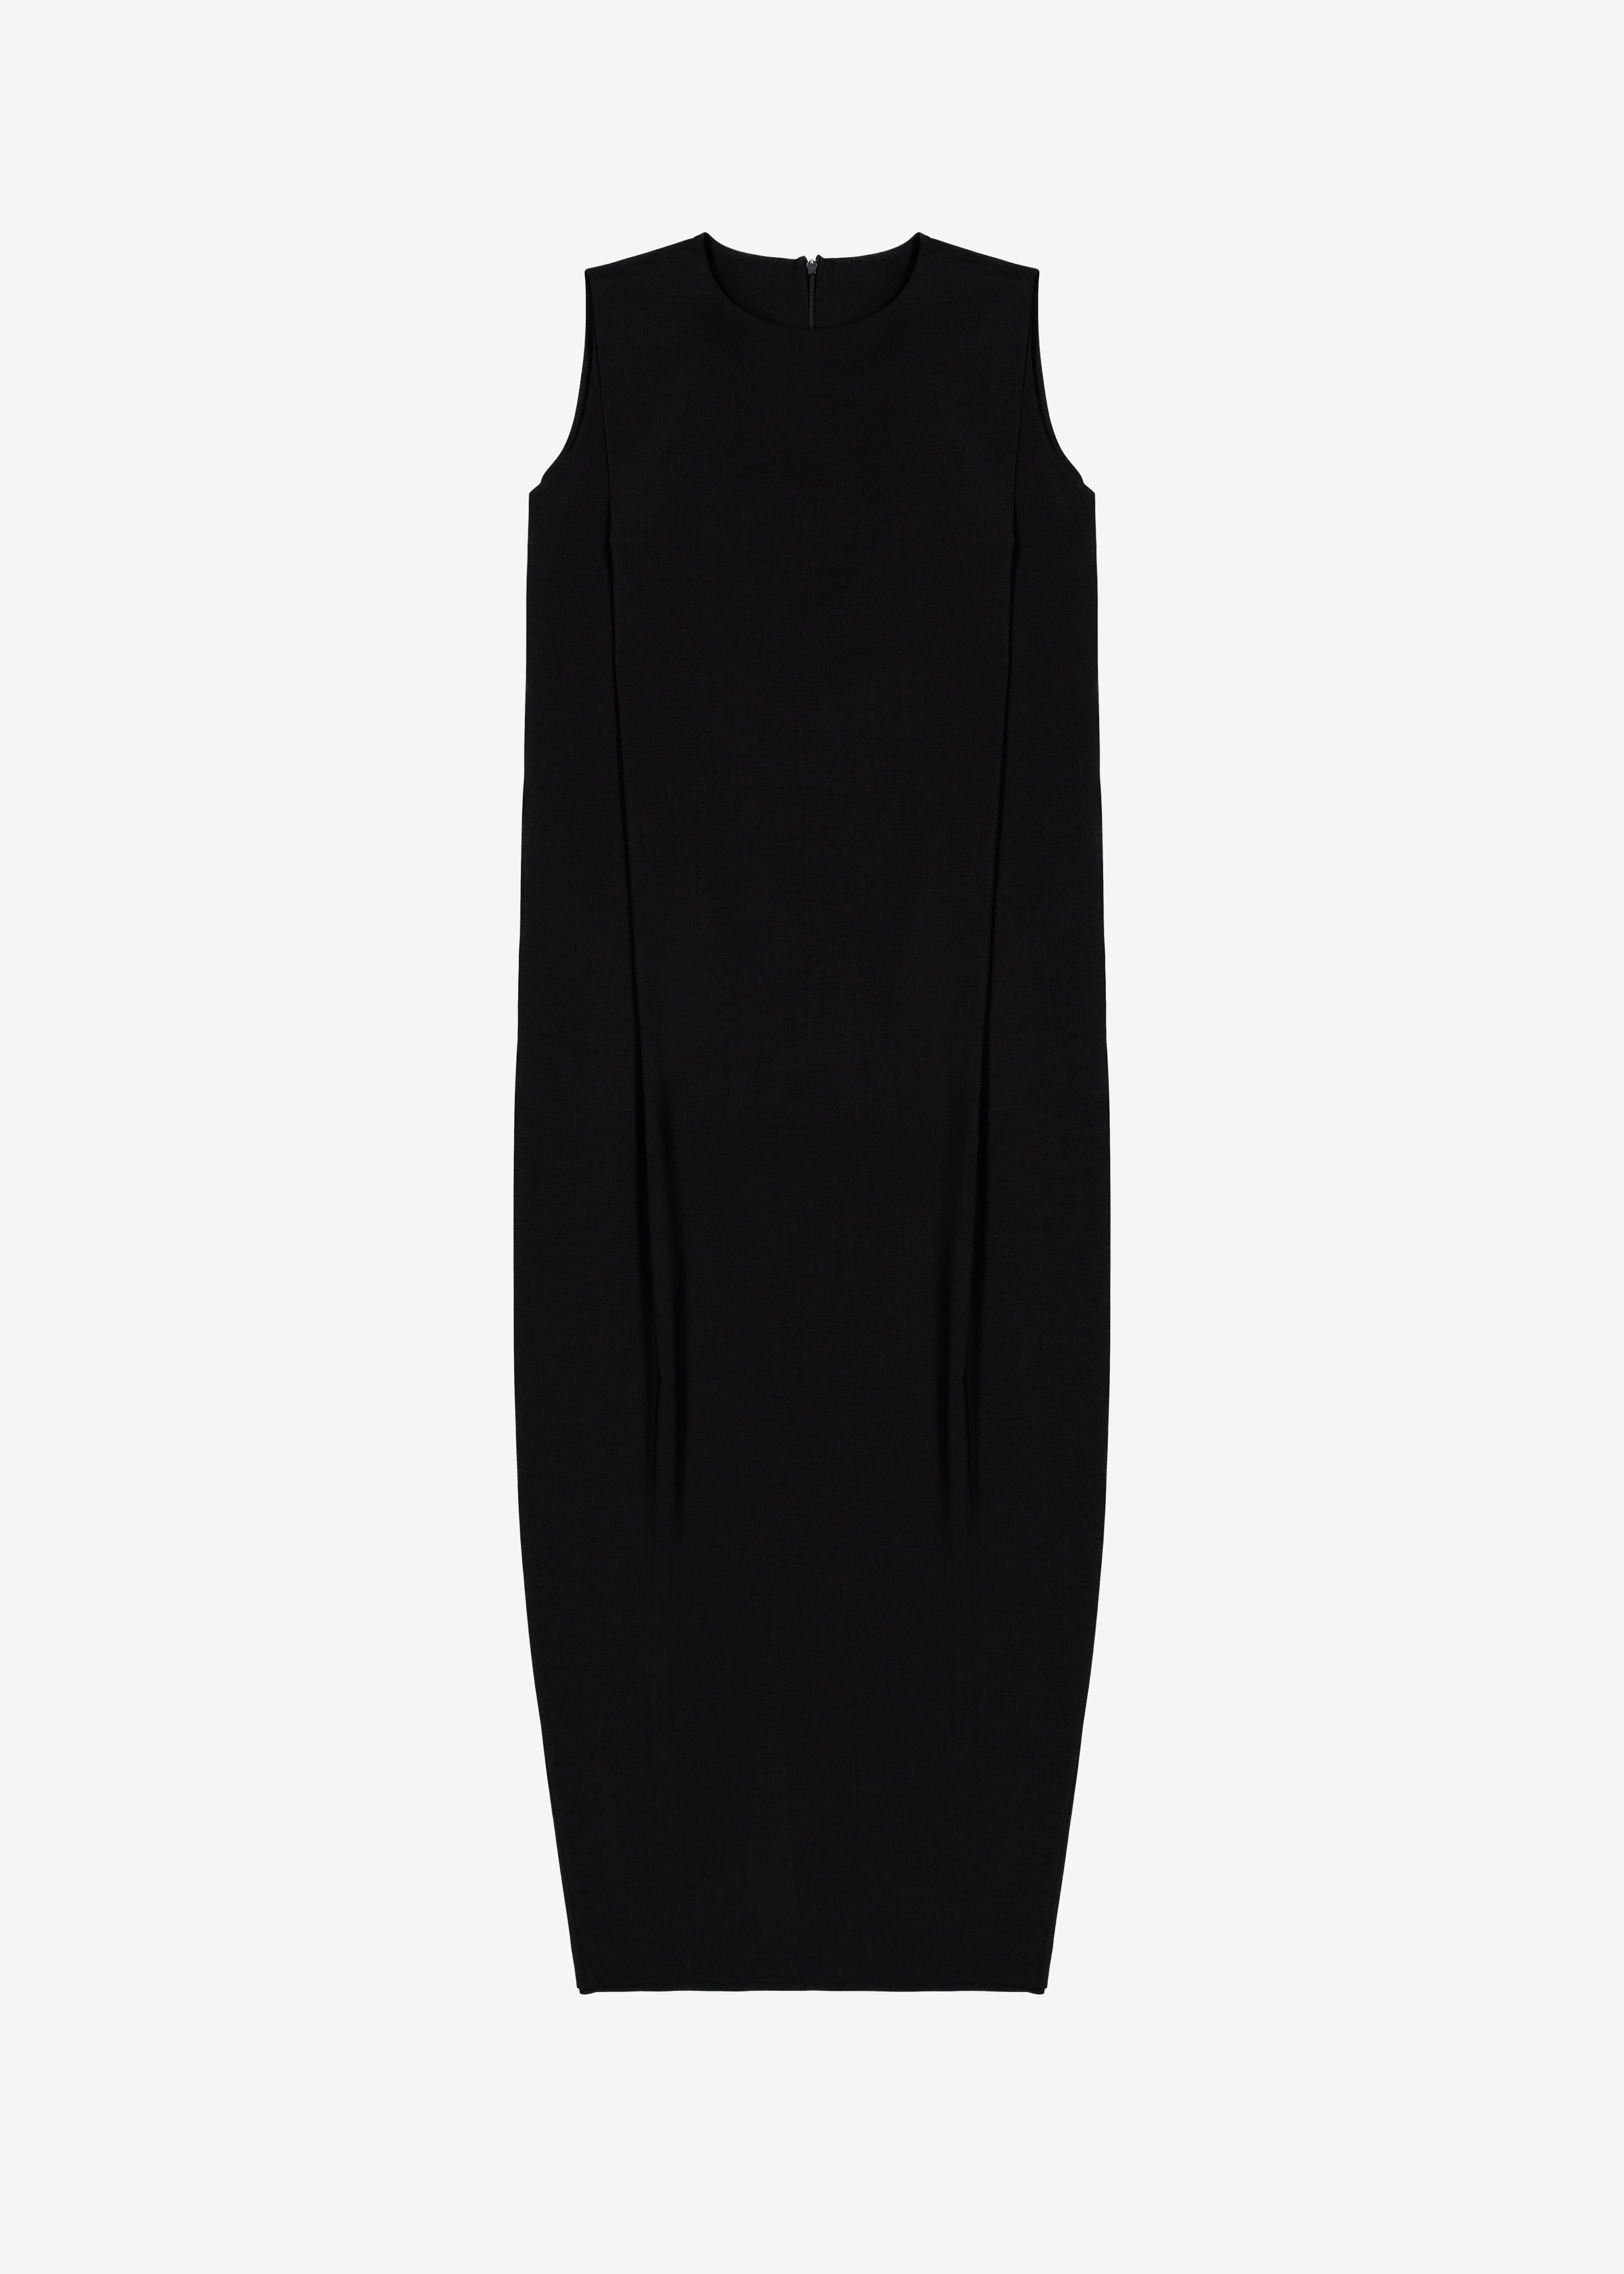 Eryn Sleeveless Pintuck Dress - Black - 5